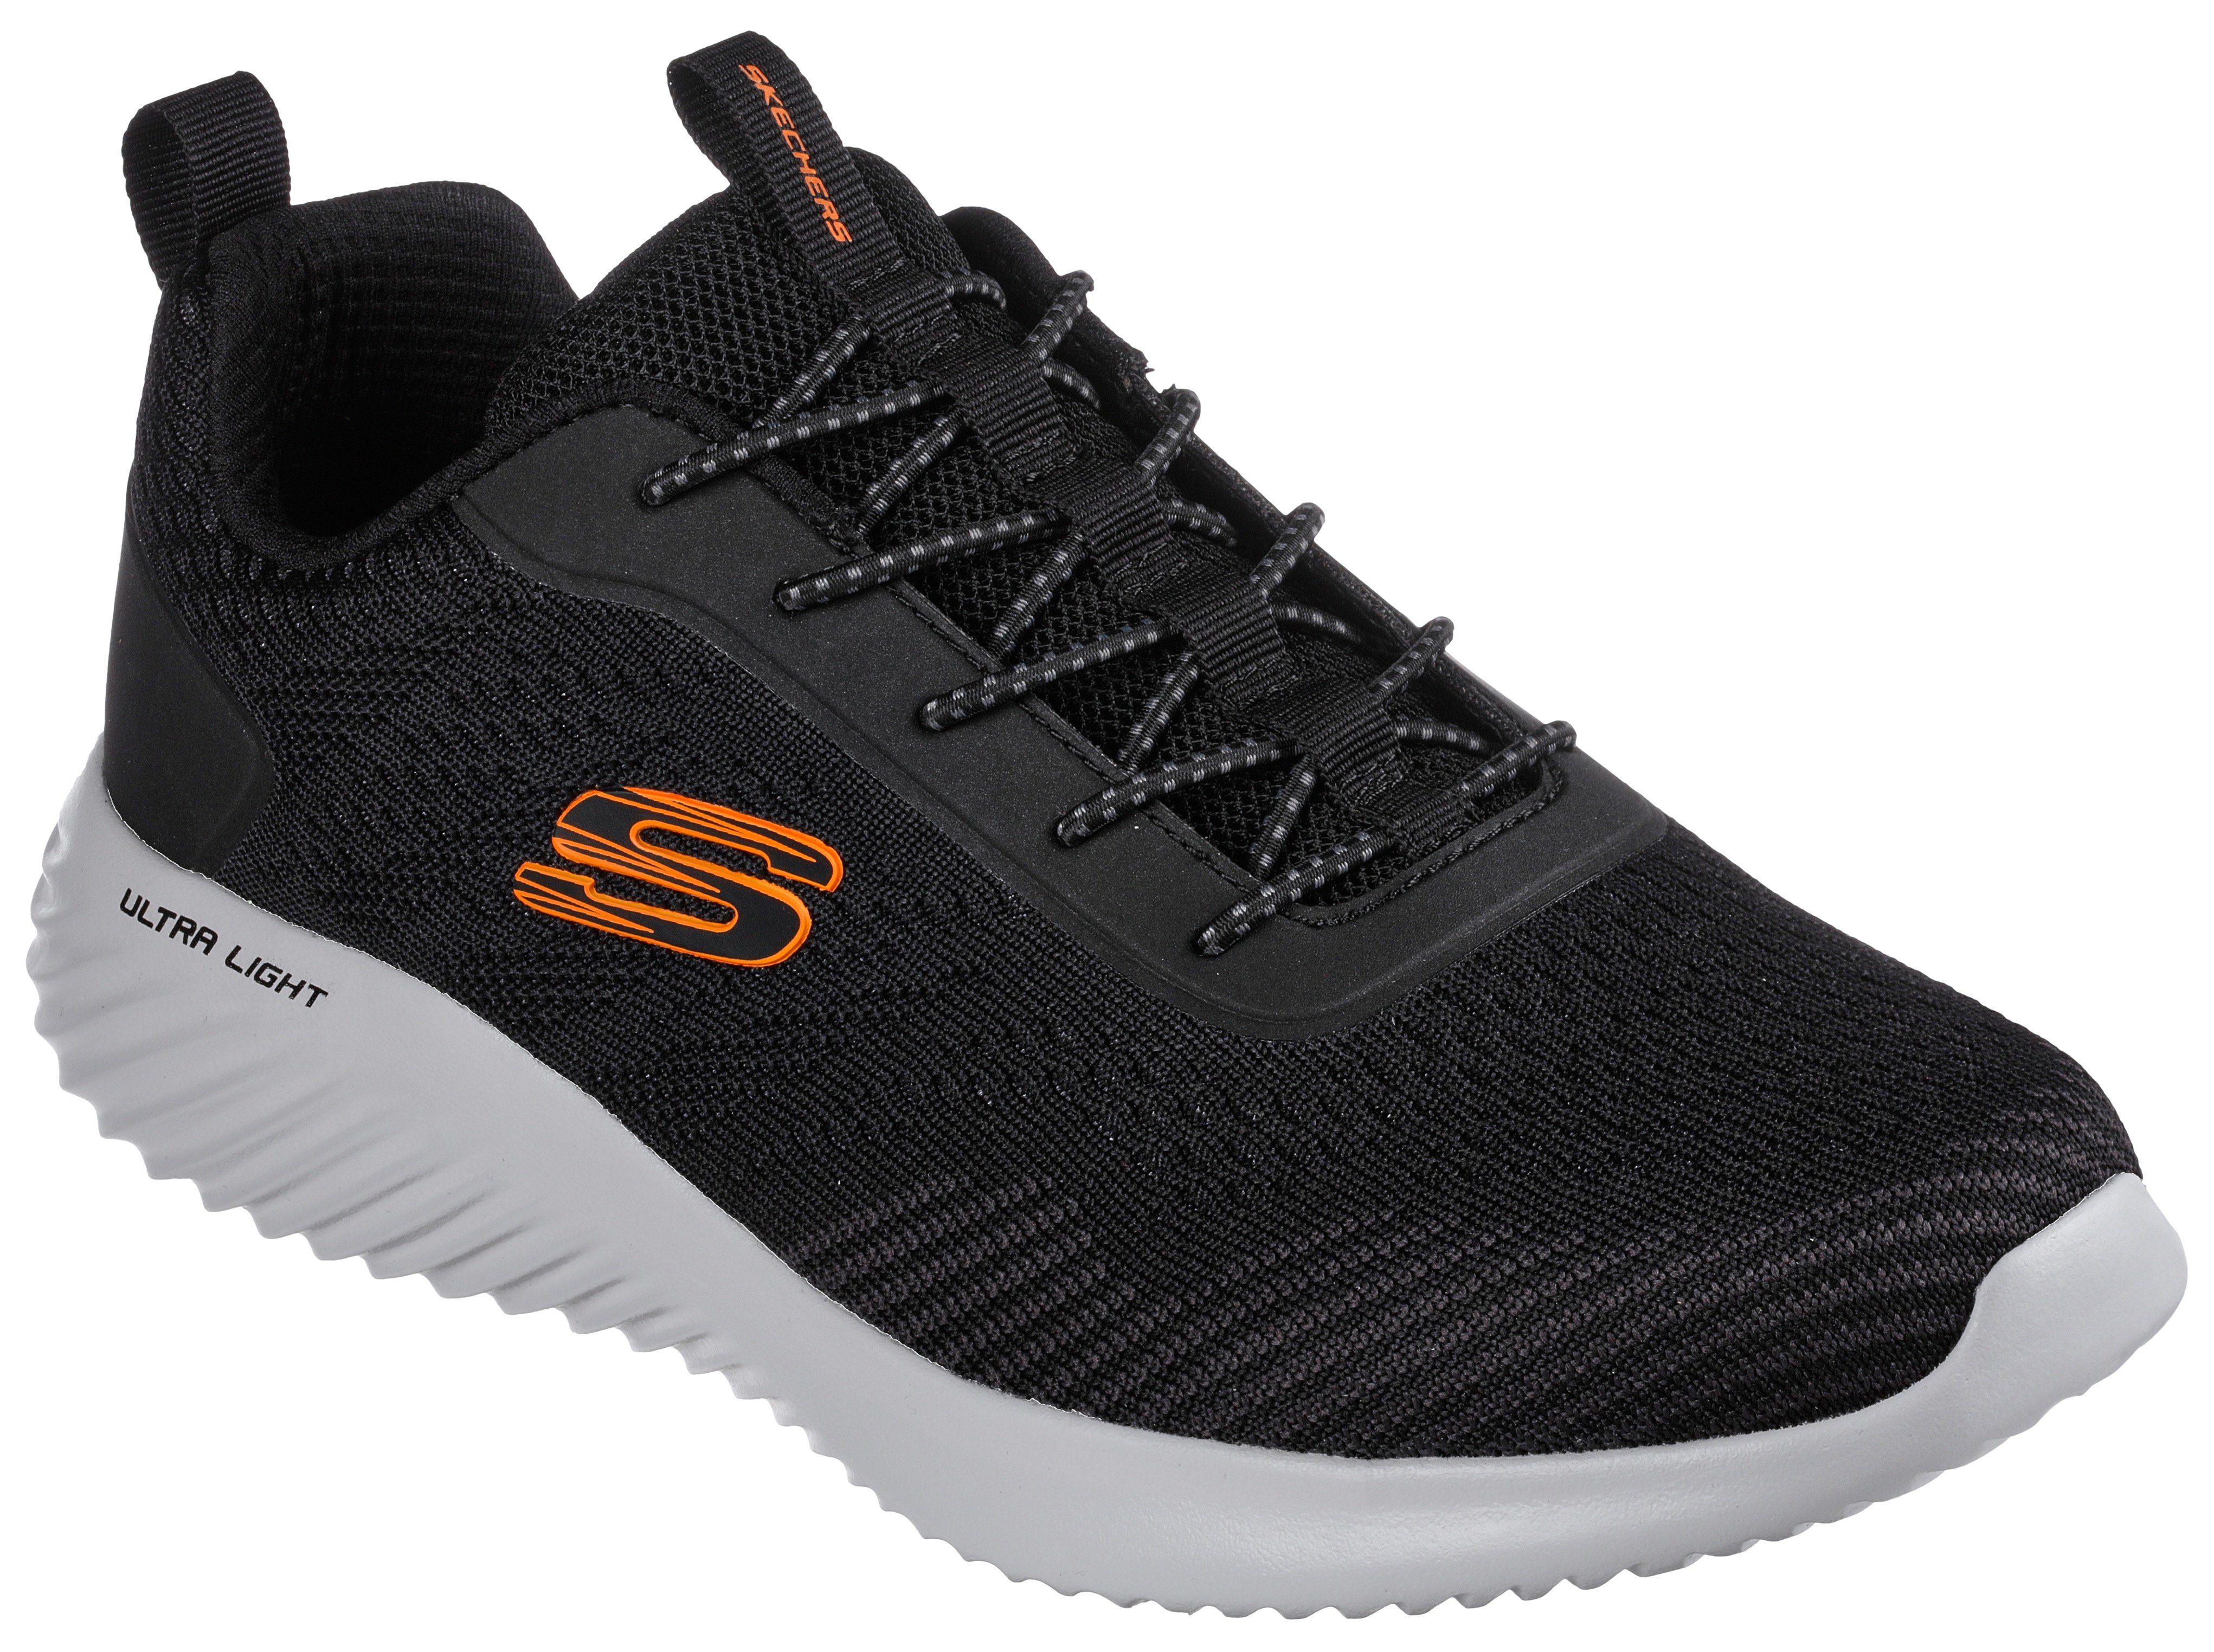 Skechers »BOUNDER« Slip-On Sneaker mit Kontrast-Details online kaufen | OTTO